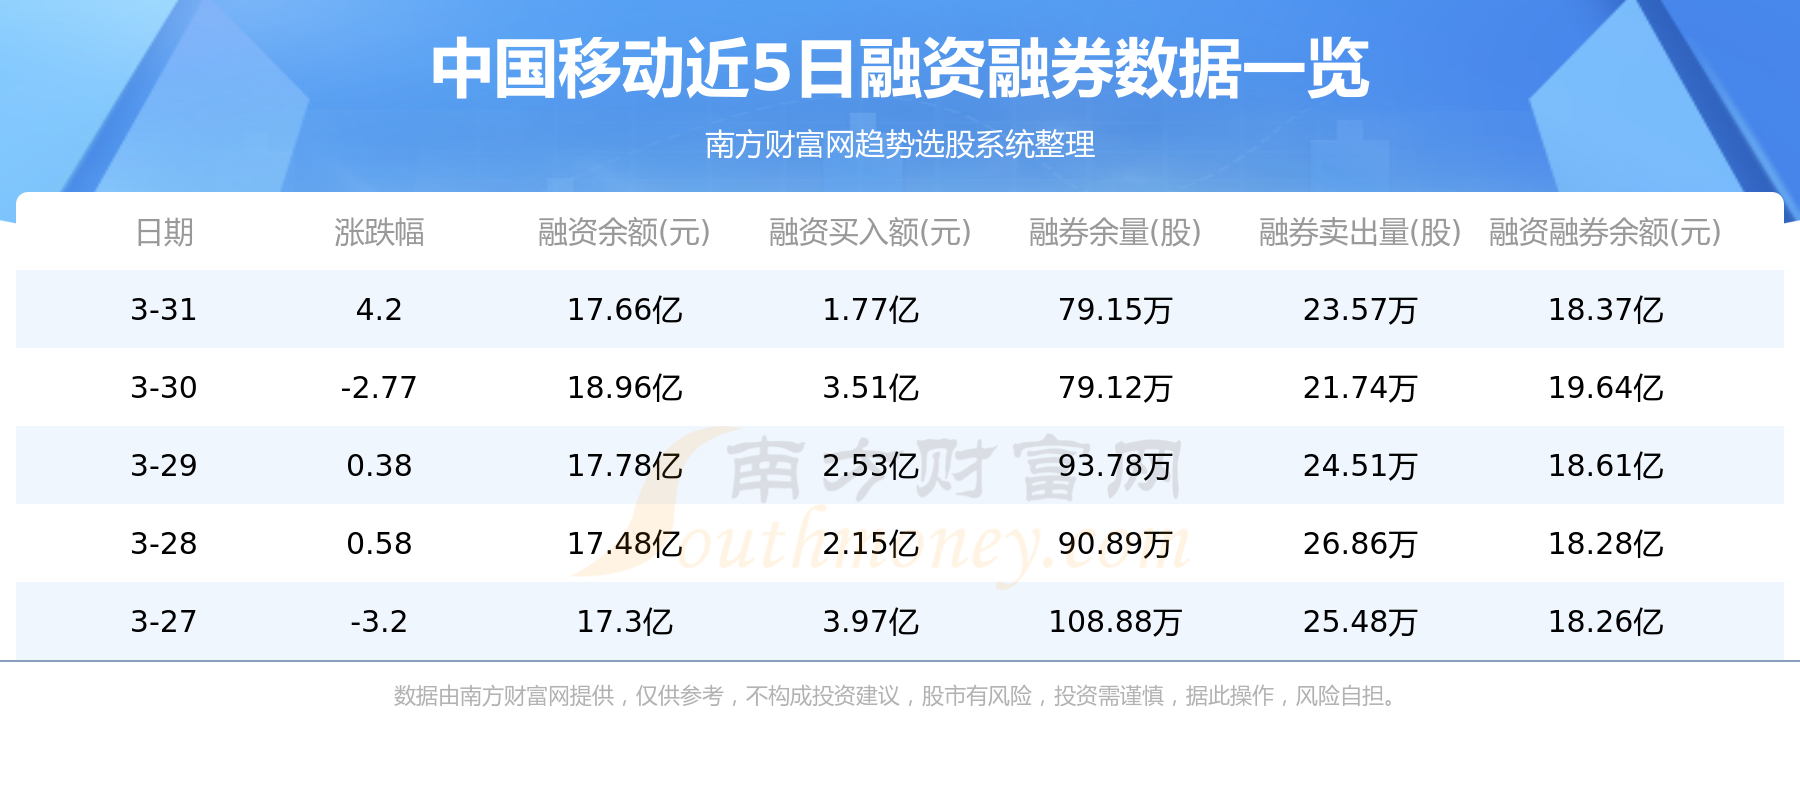 中国移动3月31日主力资金净流入8306.98万元